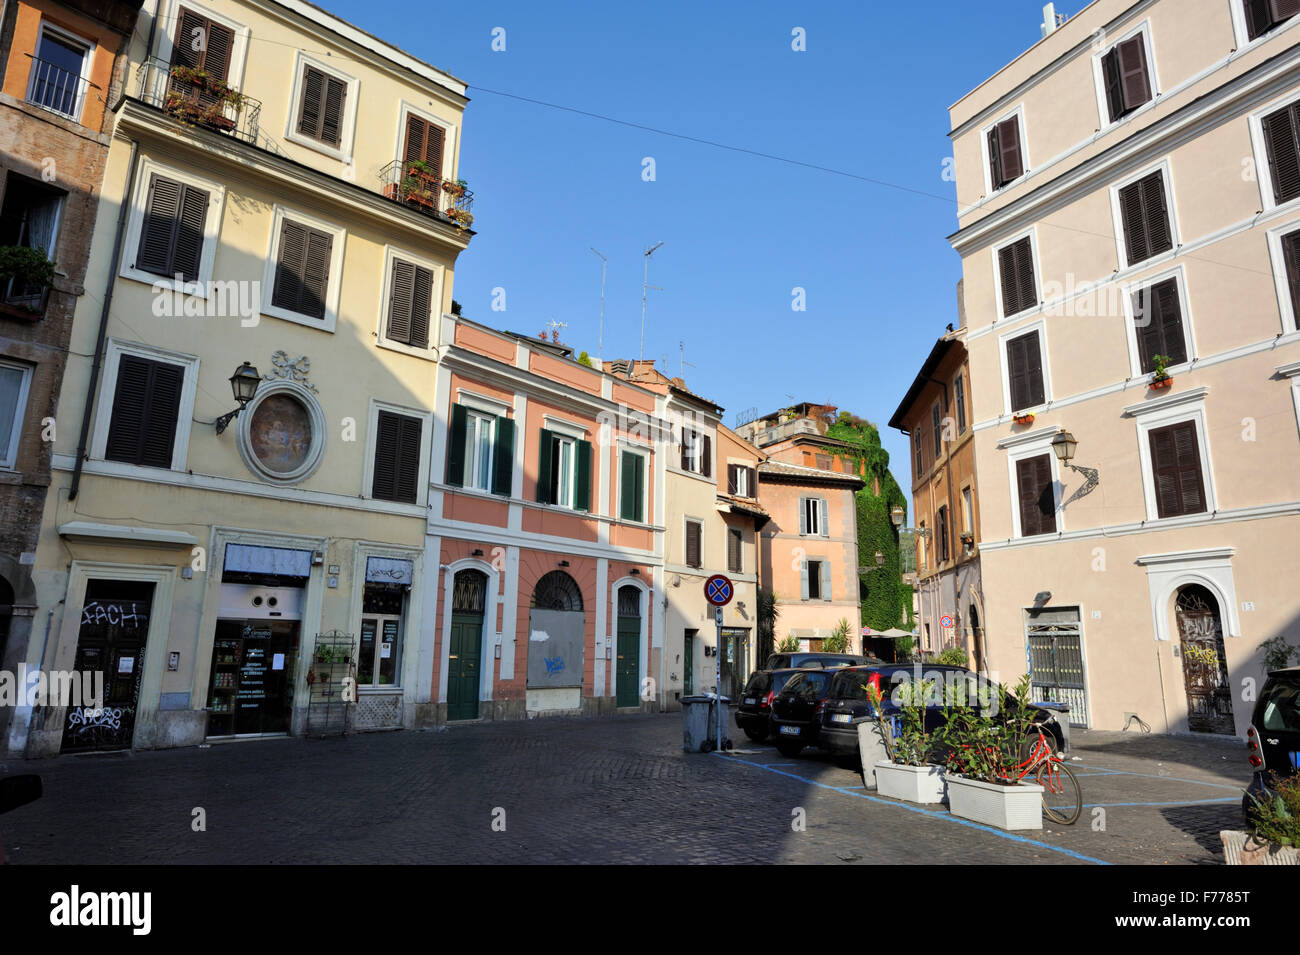 Piazza di San Giovanni della Malva, Trastevere, Rome, Italy Stock Photo